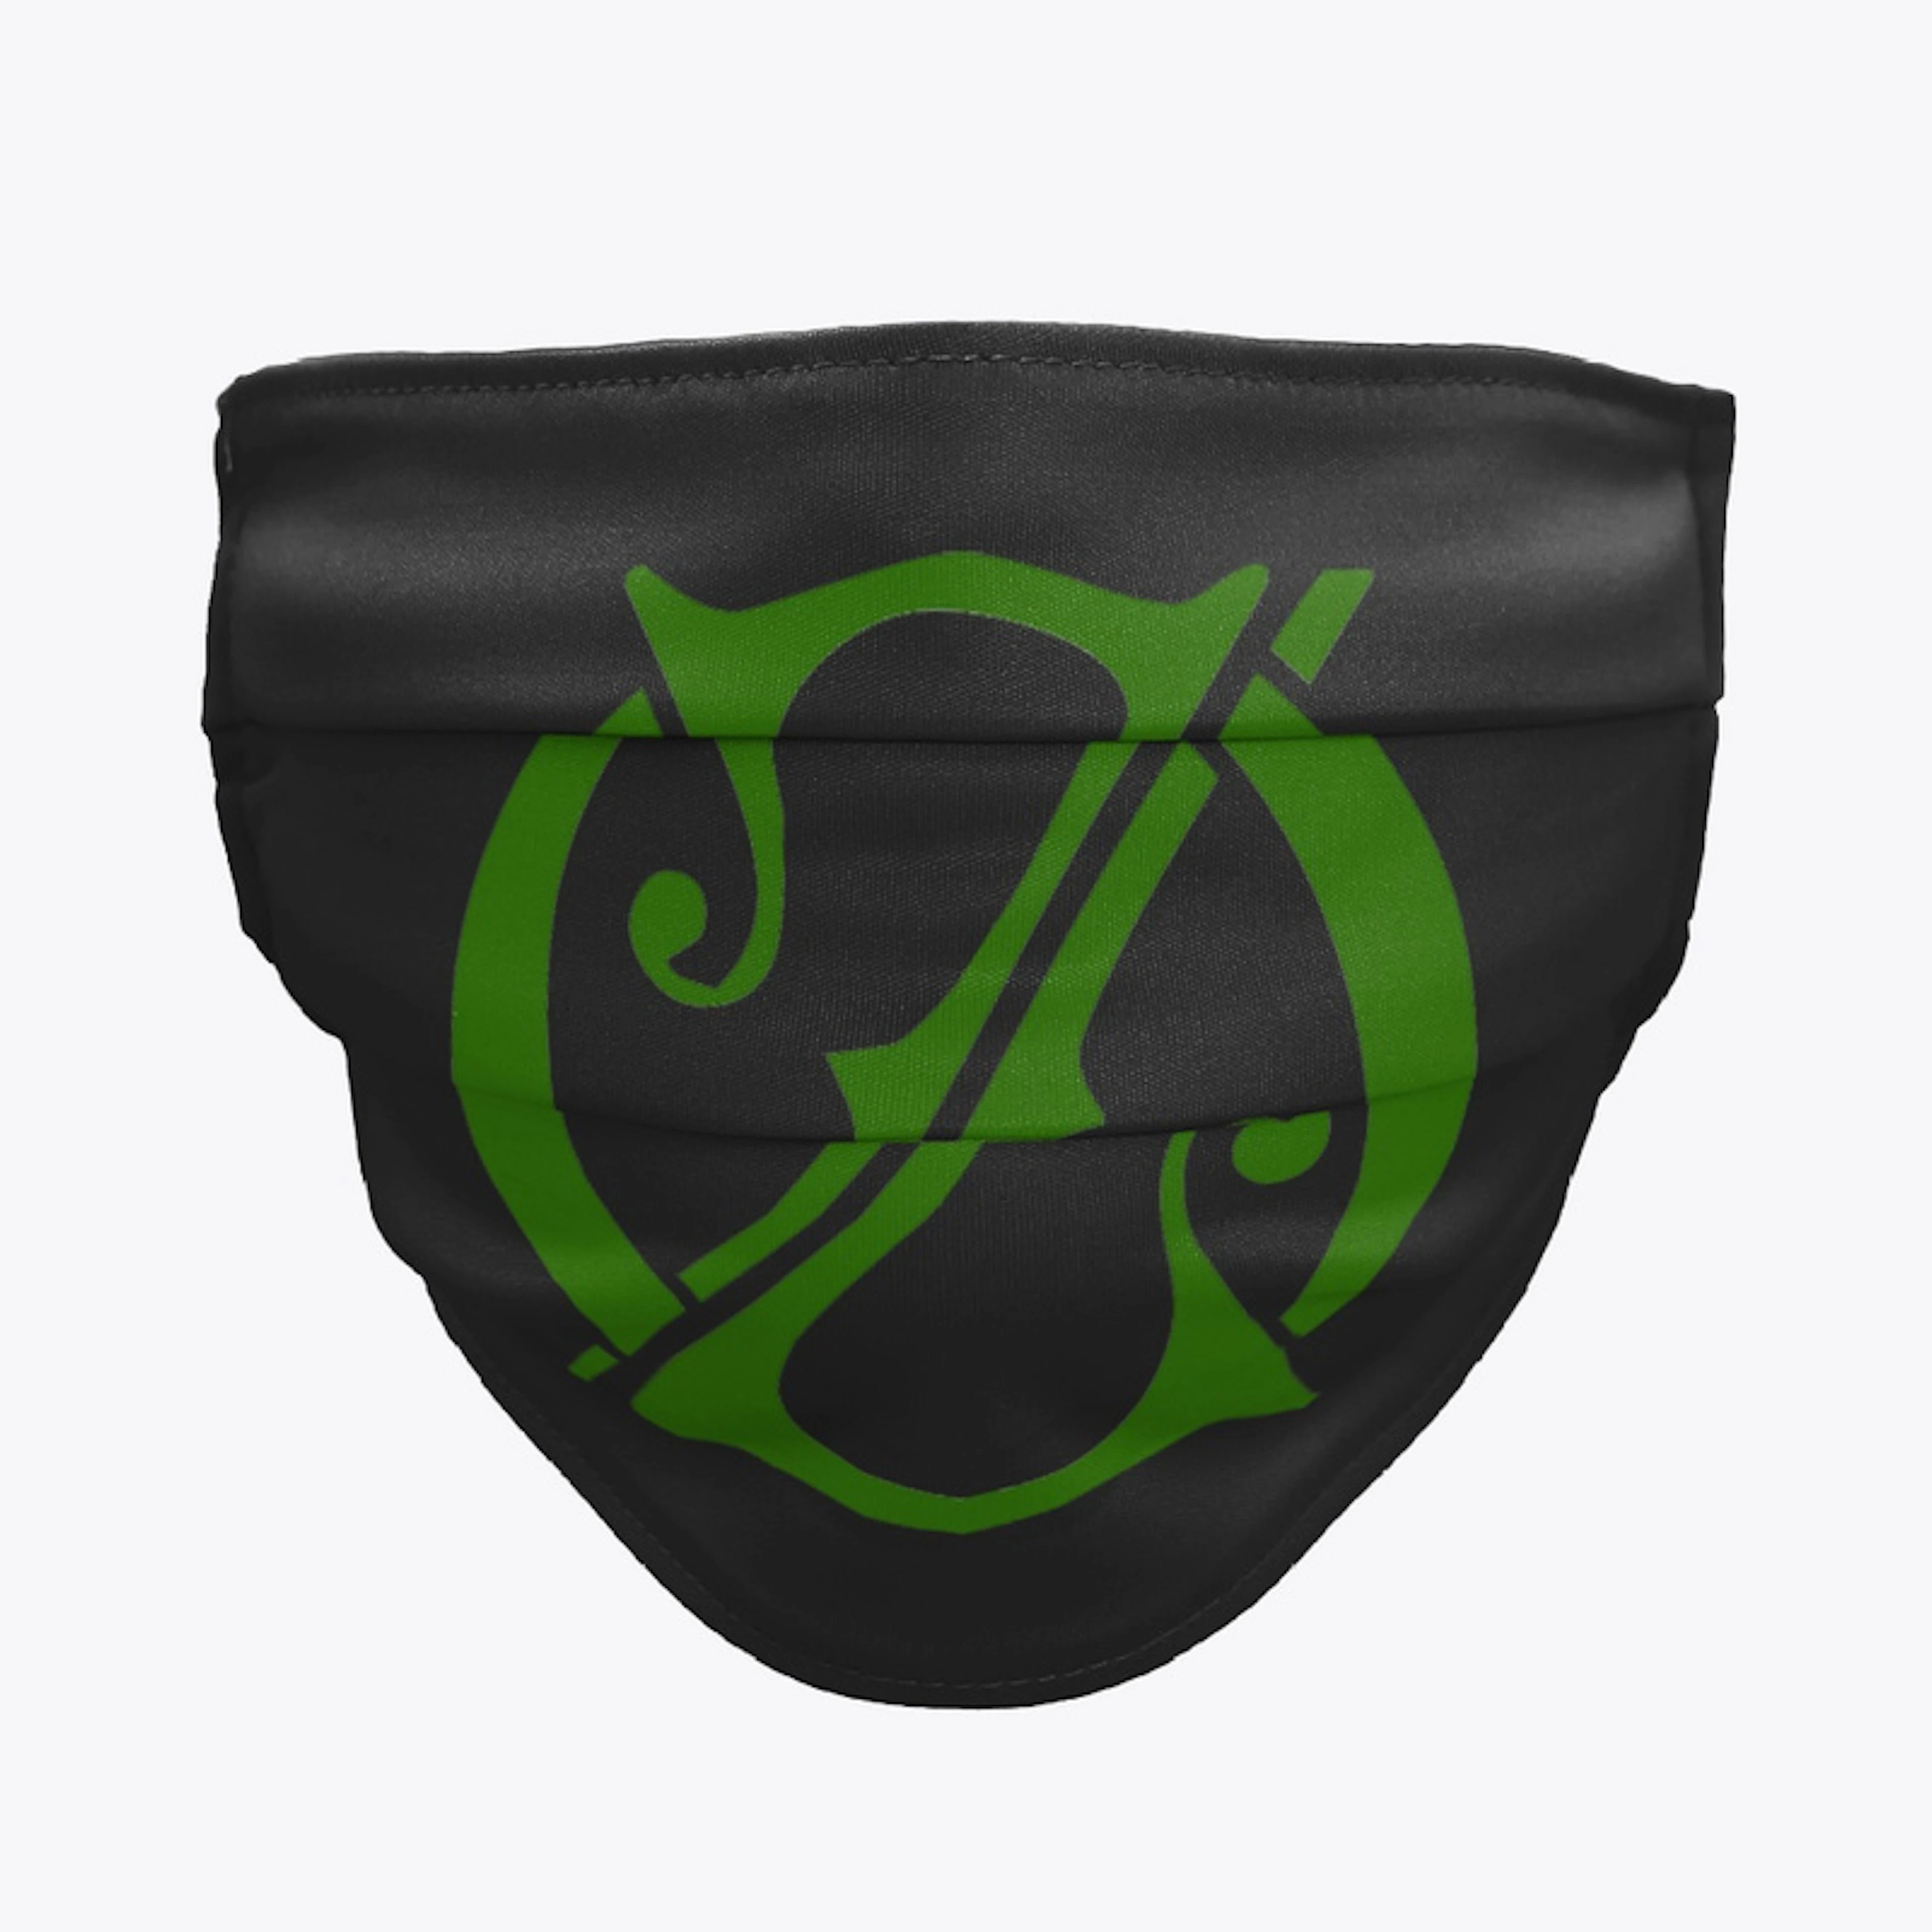 Oz Emblem Face Mask (Green on Black)